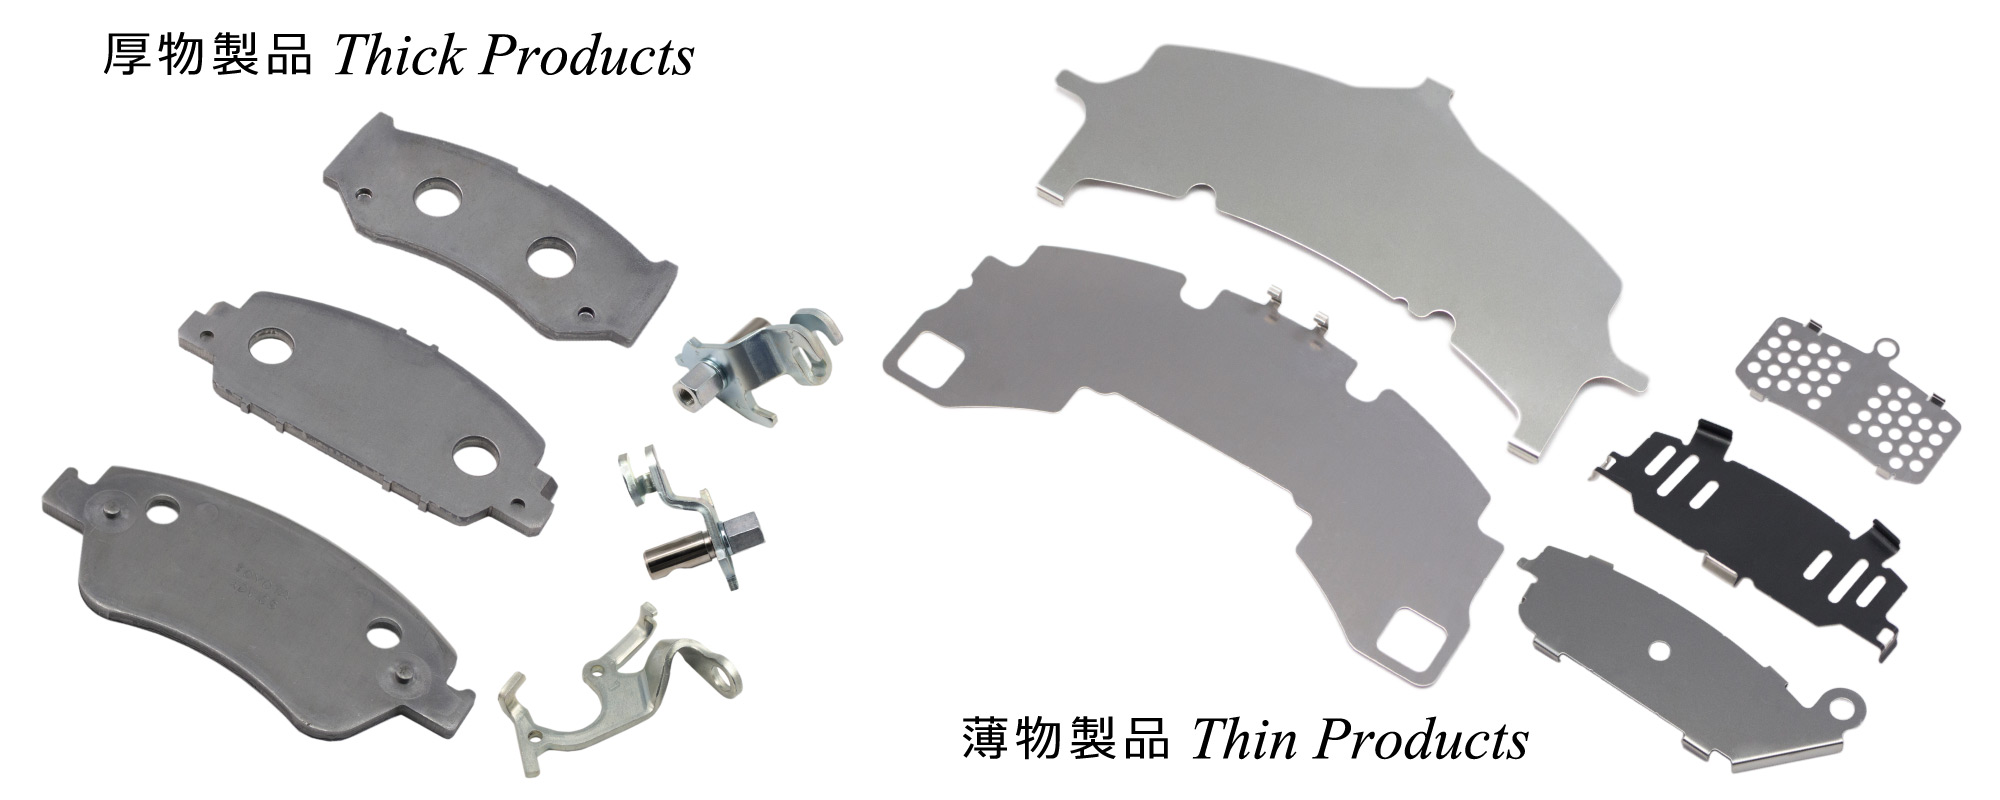 ディスクブレーキ部品製造 Disk Brake Parts Products